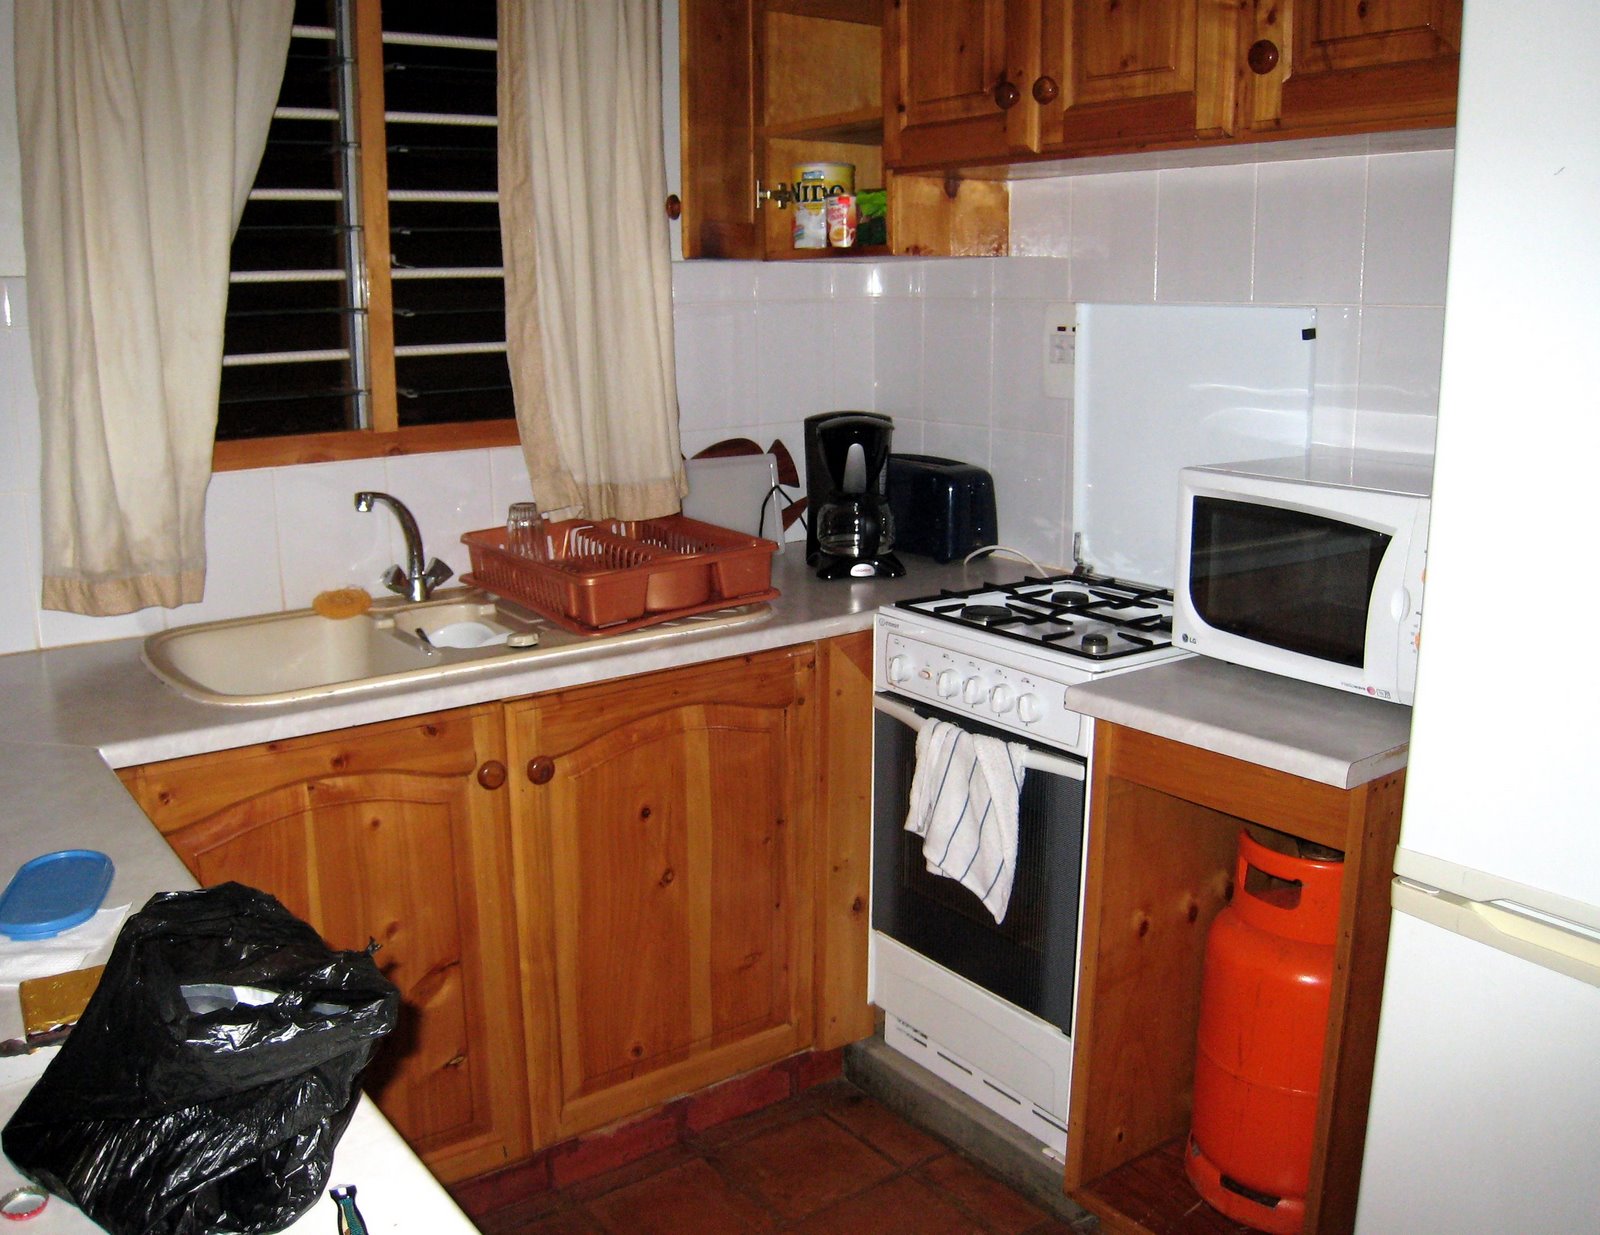 [guest+house+kitchen.jpg]